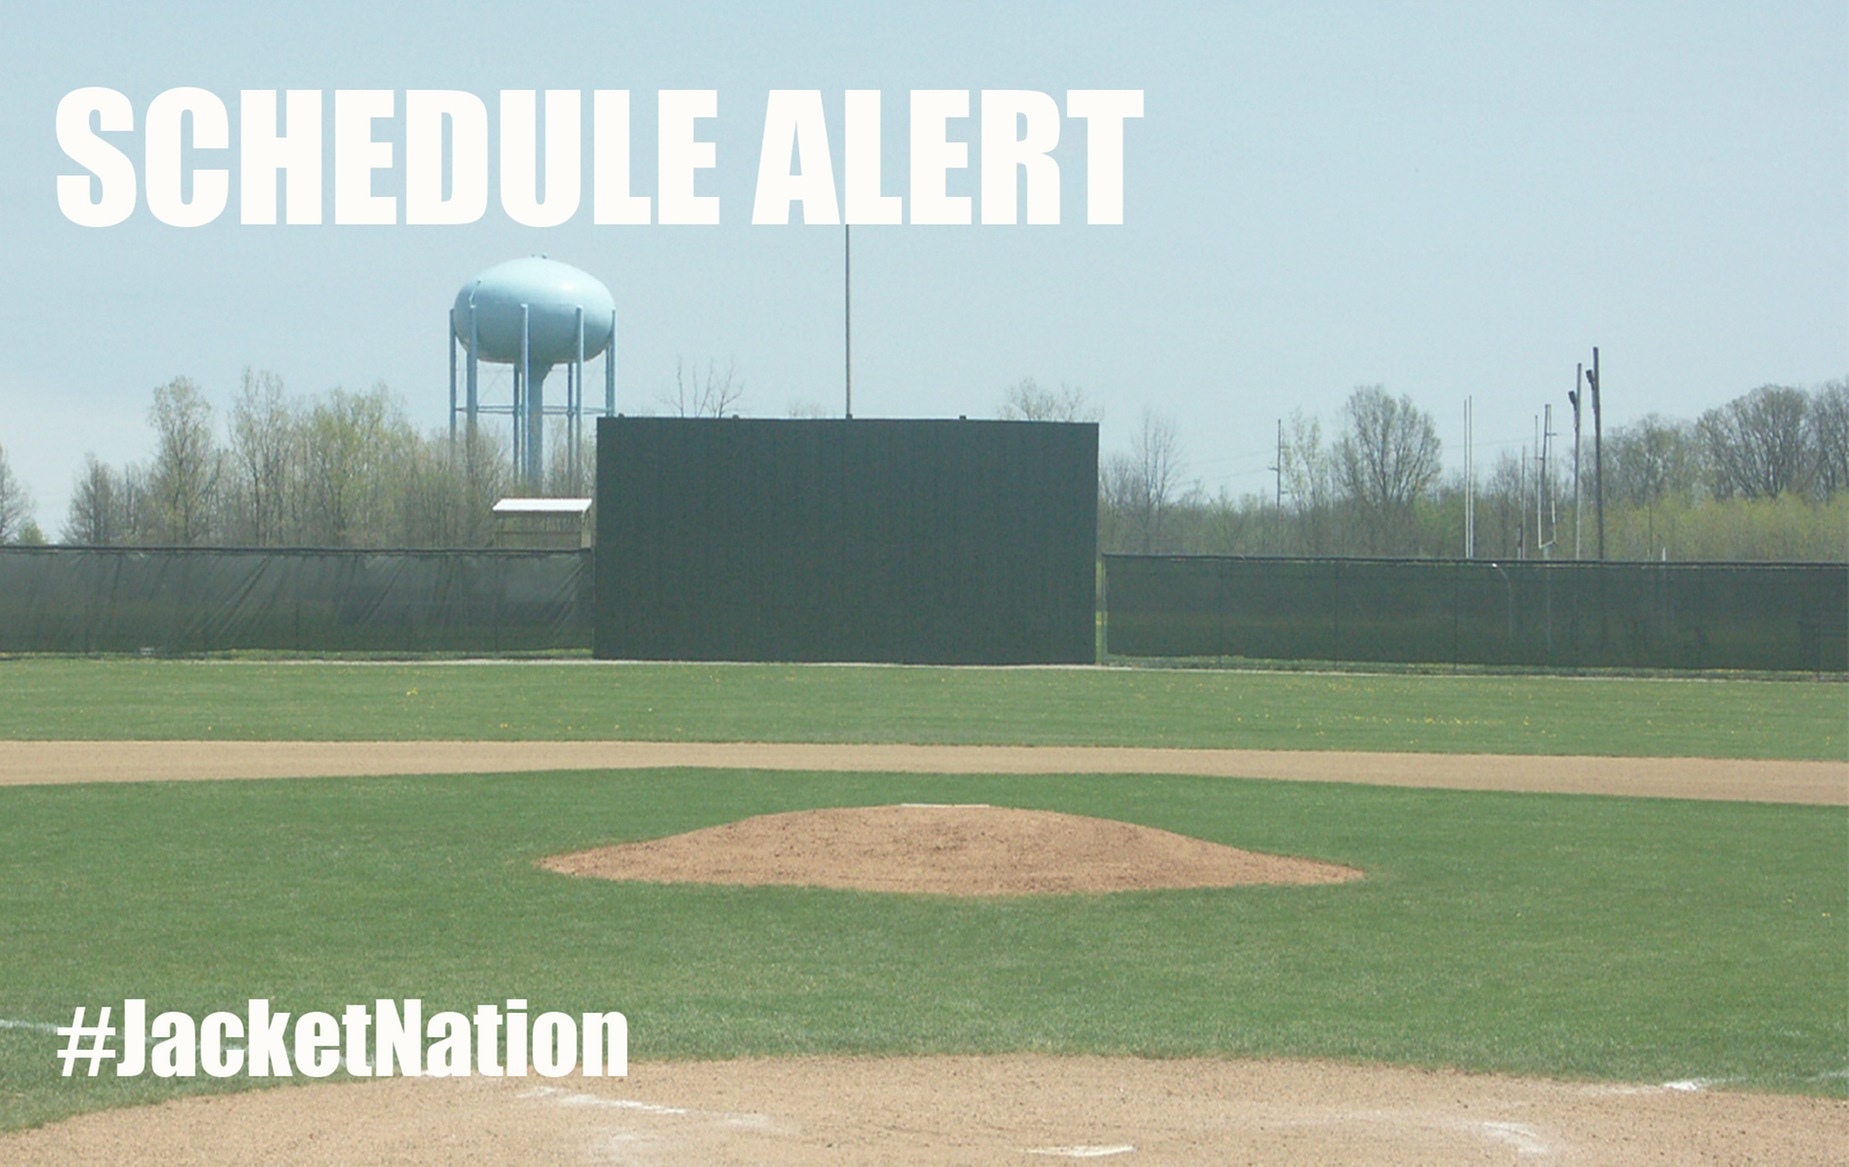 Baseball Schedule Alert